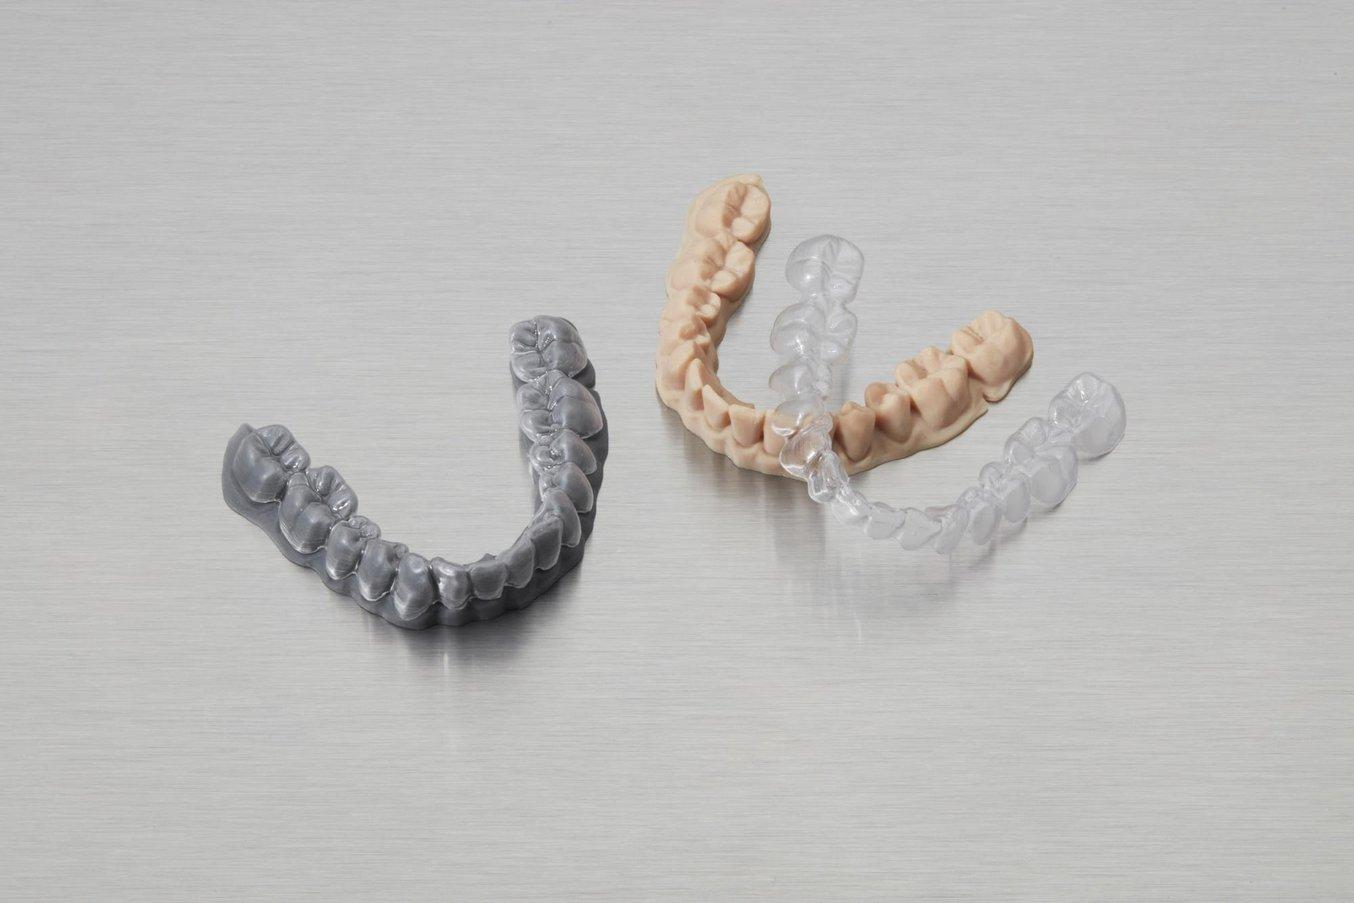 Ces plaques occlusales transparentes, l'un des traitements orthodontiques les plus populaires actuellement, n'existeraient pas sans les techniques numériques telles que l'impression 3D.